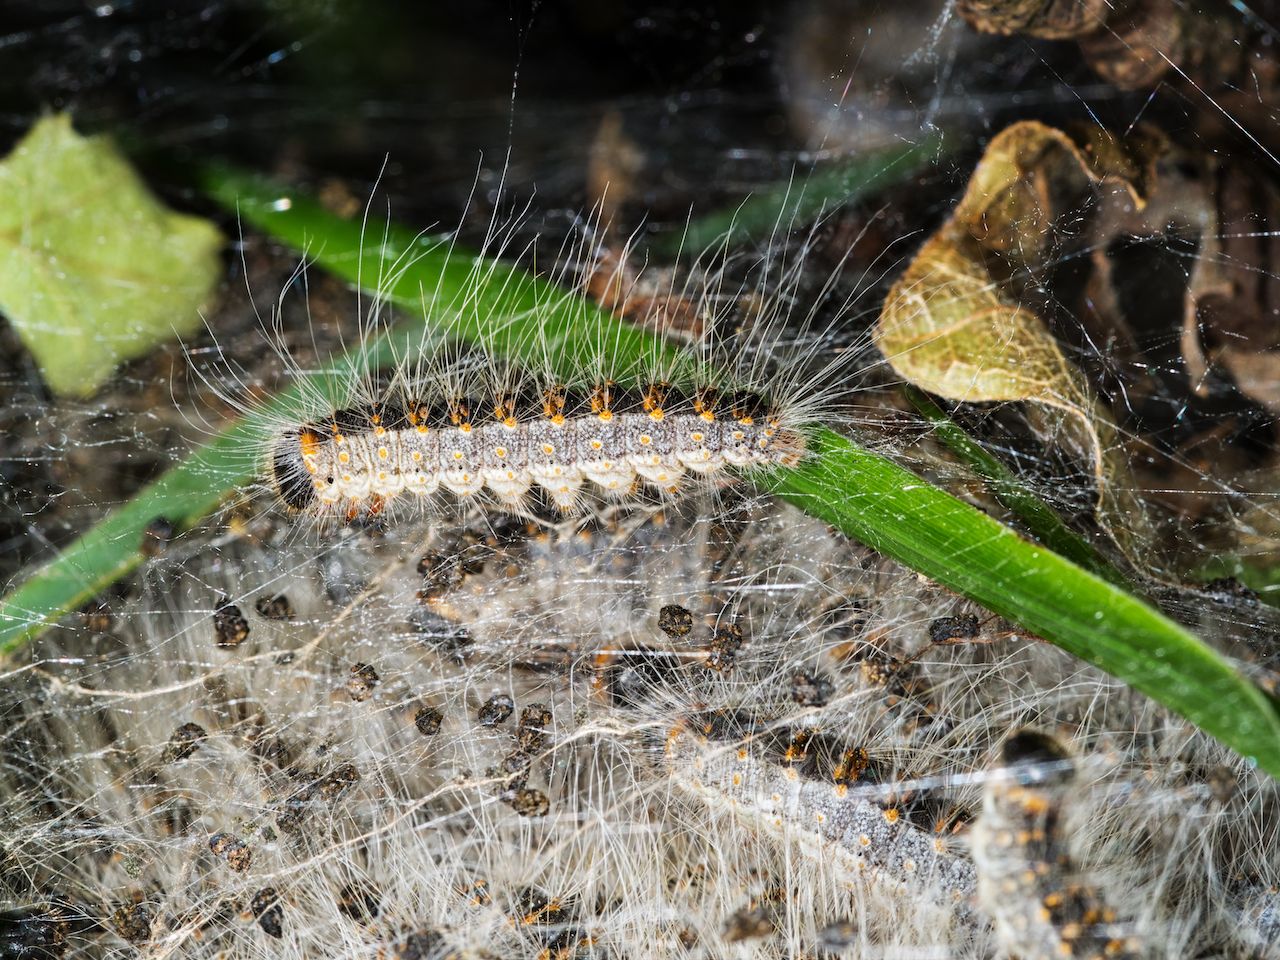 Toxic caterpillar